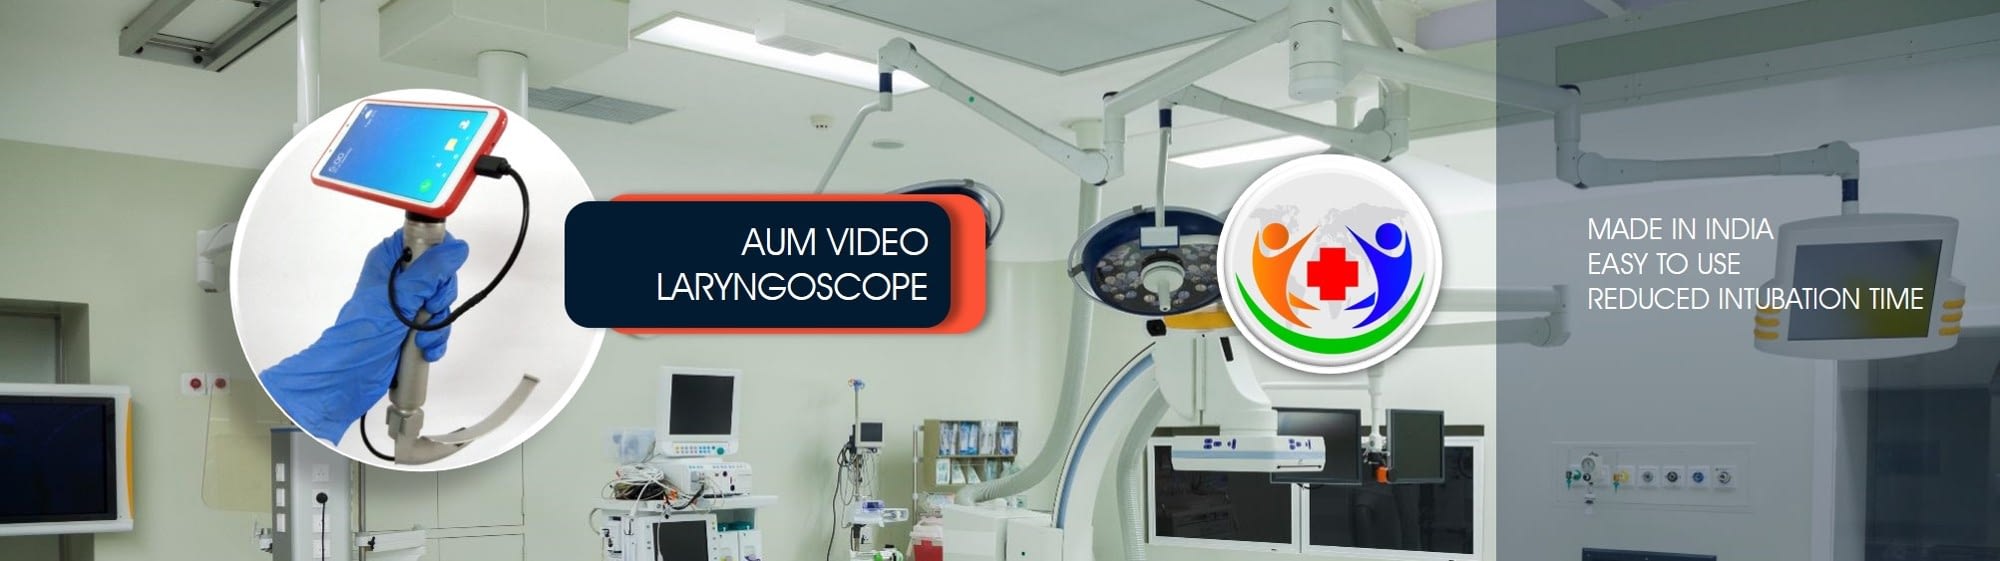 Video Laryngoscope hand held